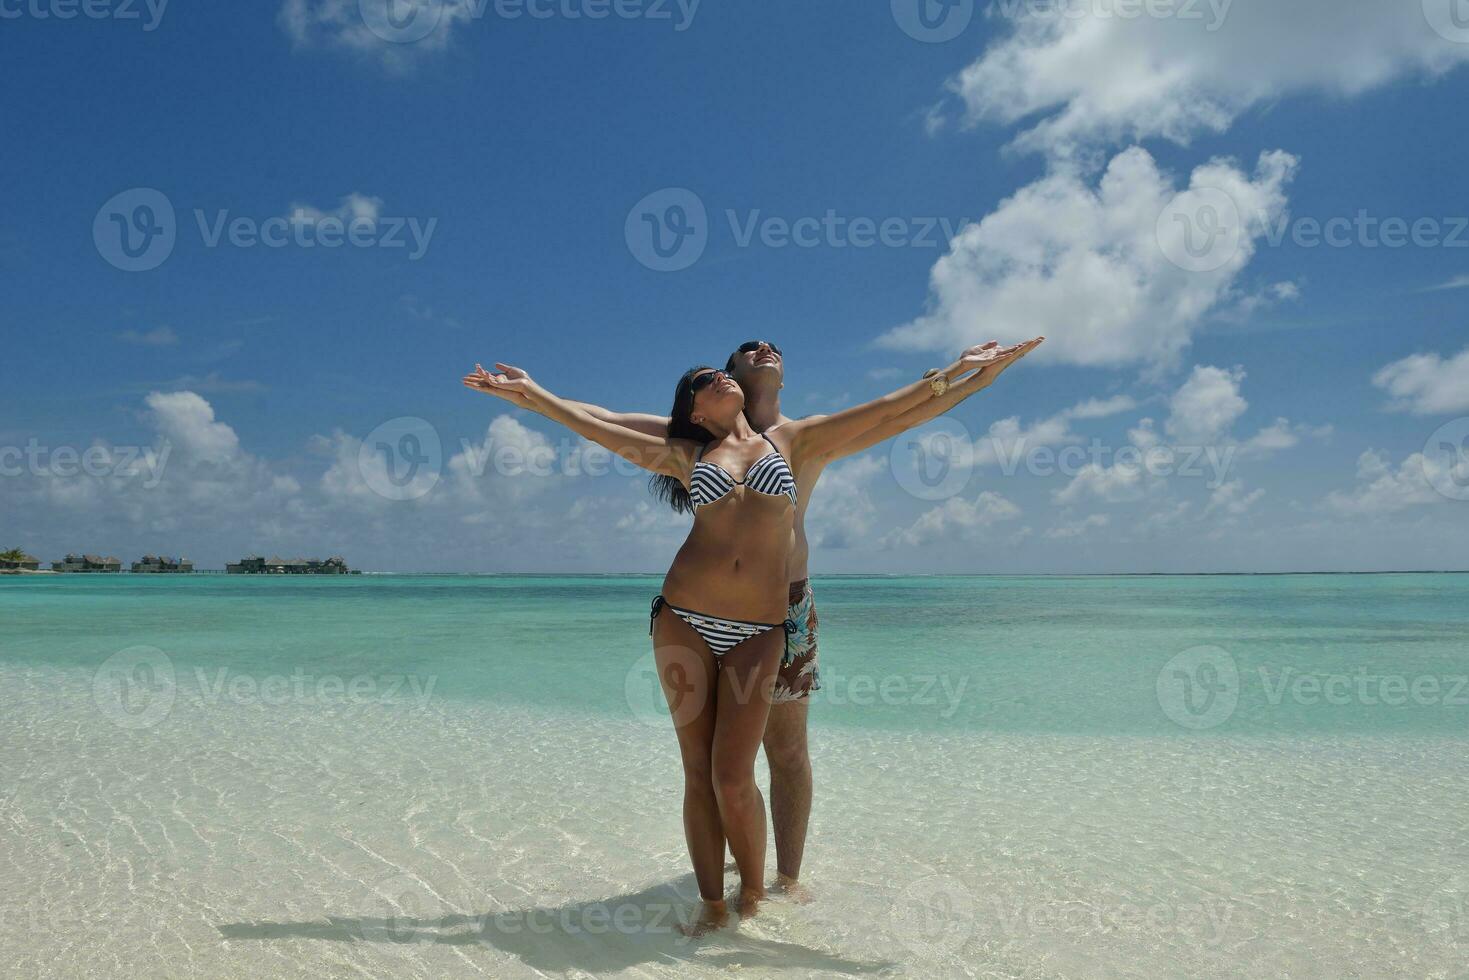 la giovane coppia felice si diverte sulla spiaggia foto